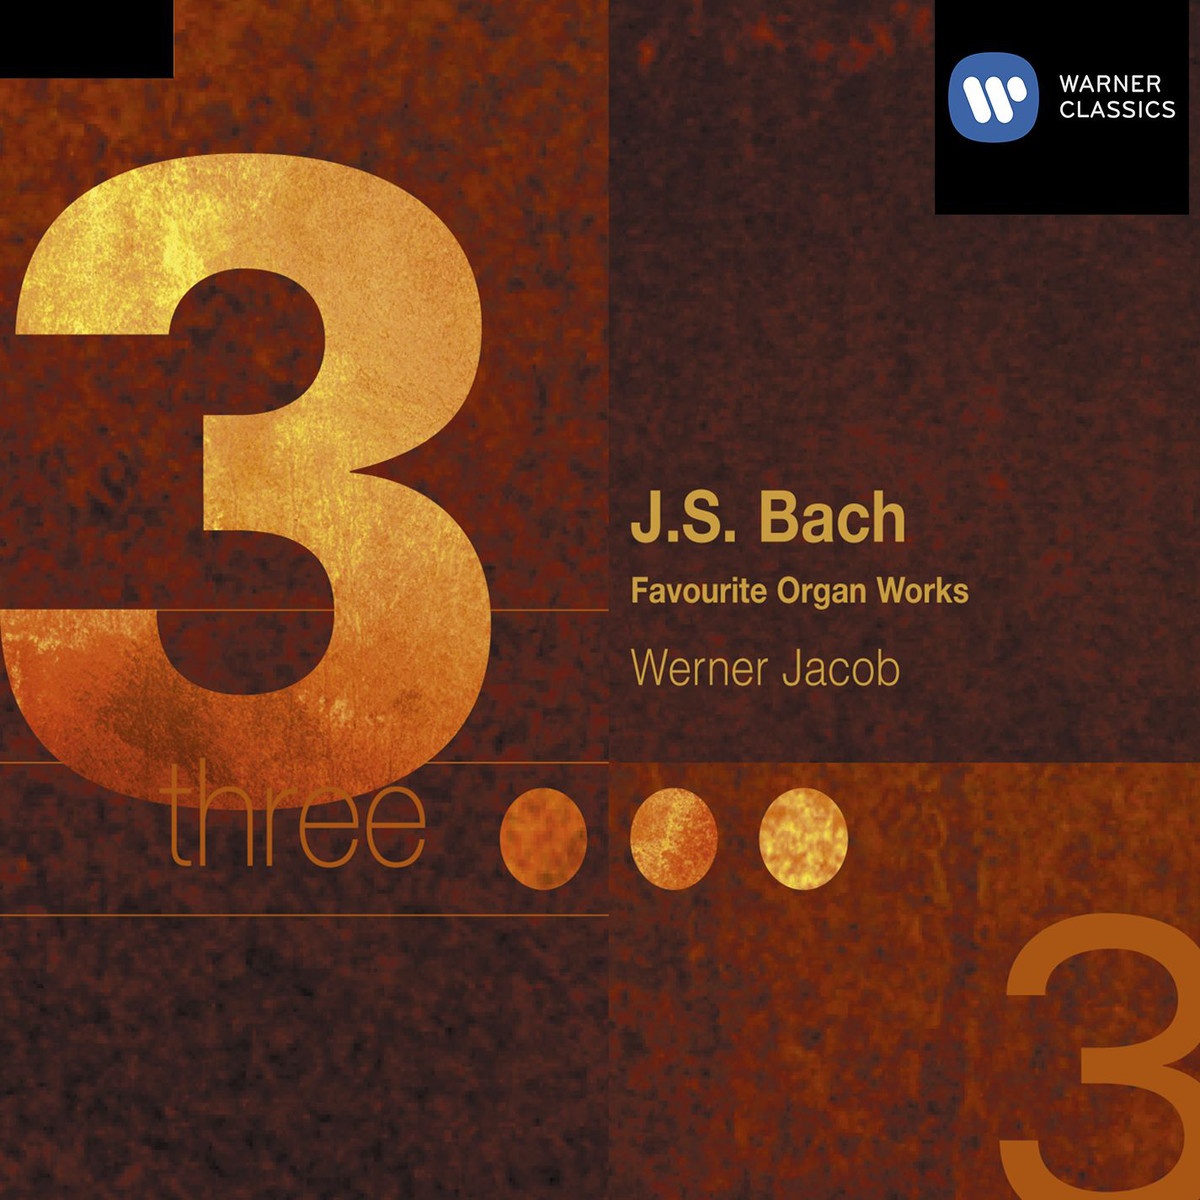 Sechs Schü blerChor le Nr. 16 BWV 645650 1992 Digital Remaster: Nr. 1  Wachet auf, ruft uns die Stimme, BWV 645